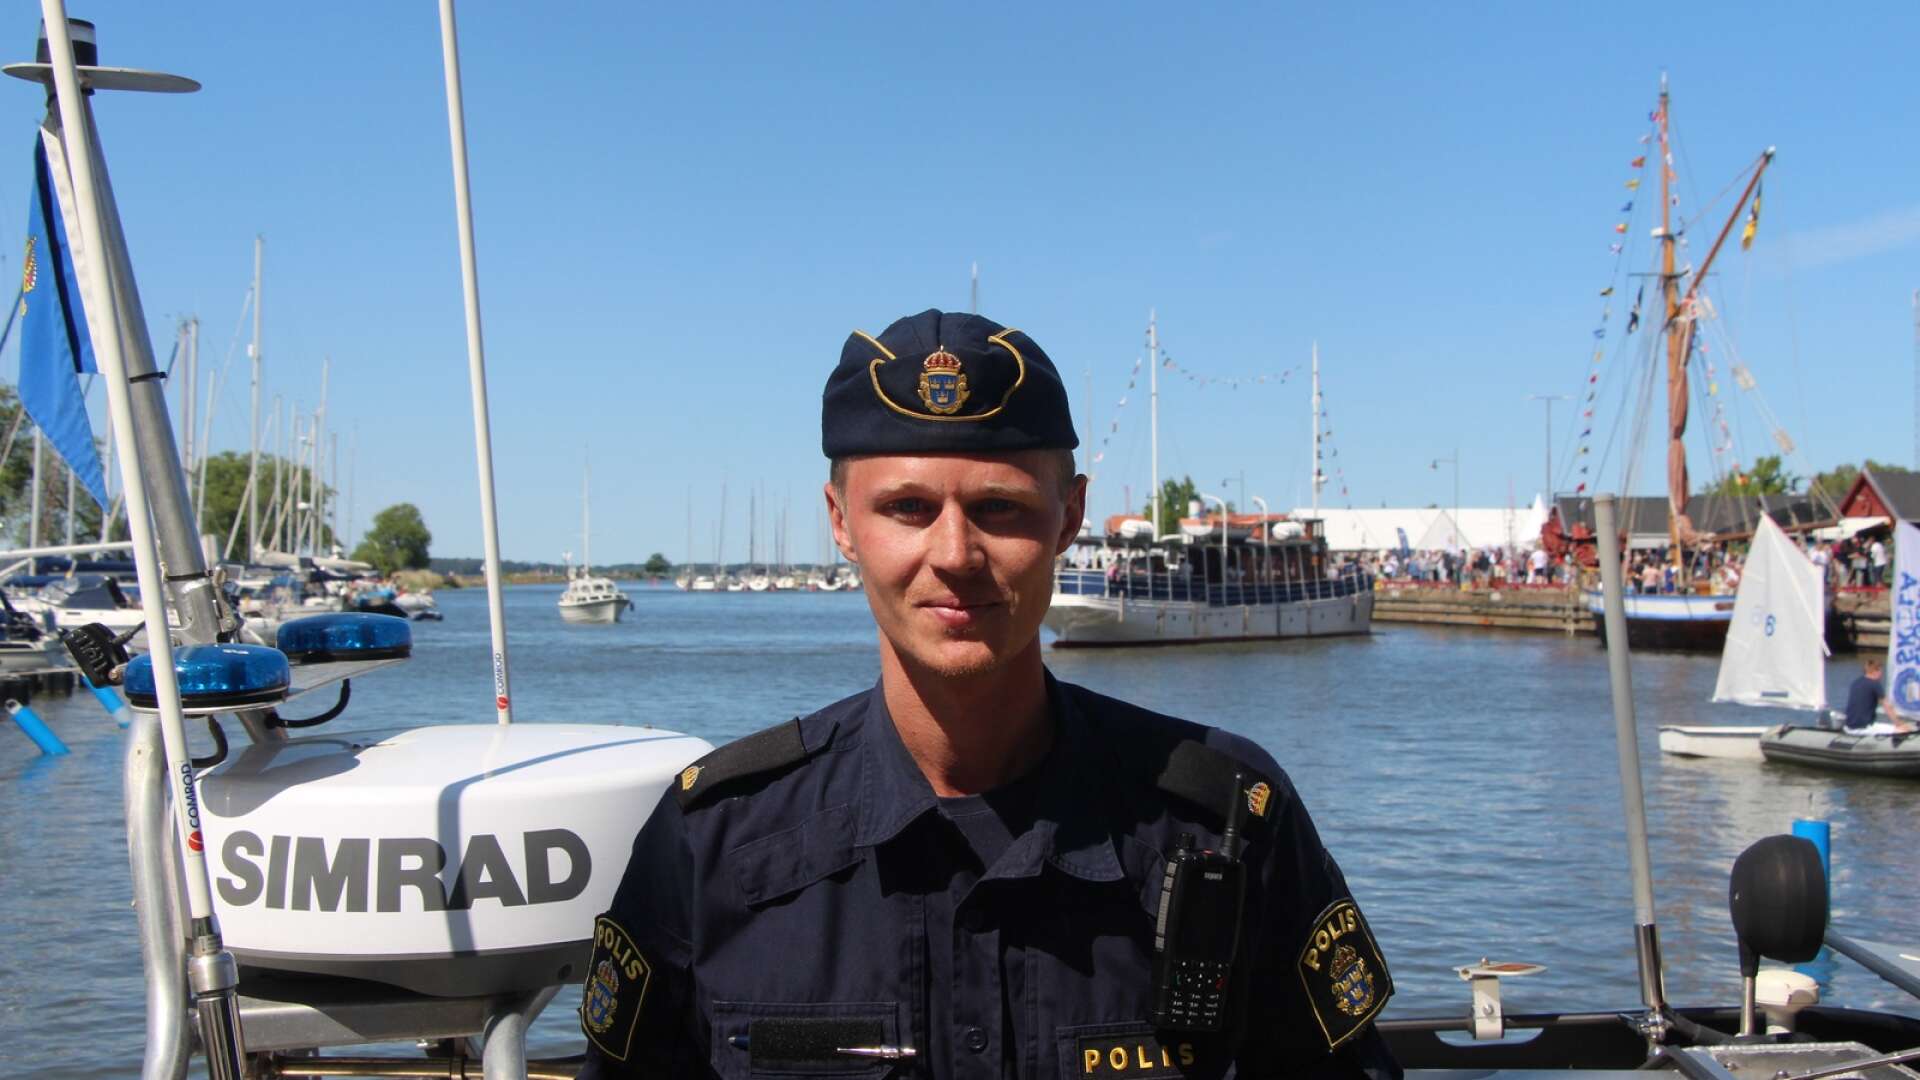 Anton jobbar på sjöpolisen region väst och var under fredagen och lördagen på plats i Mariestad.